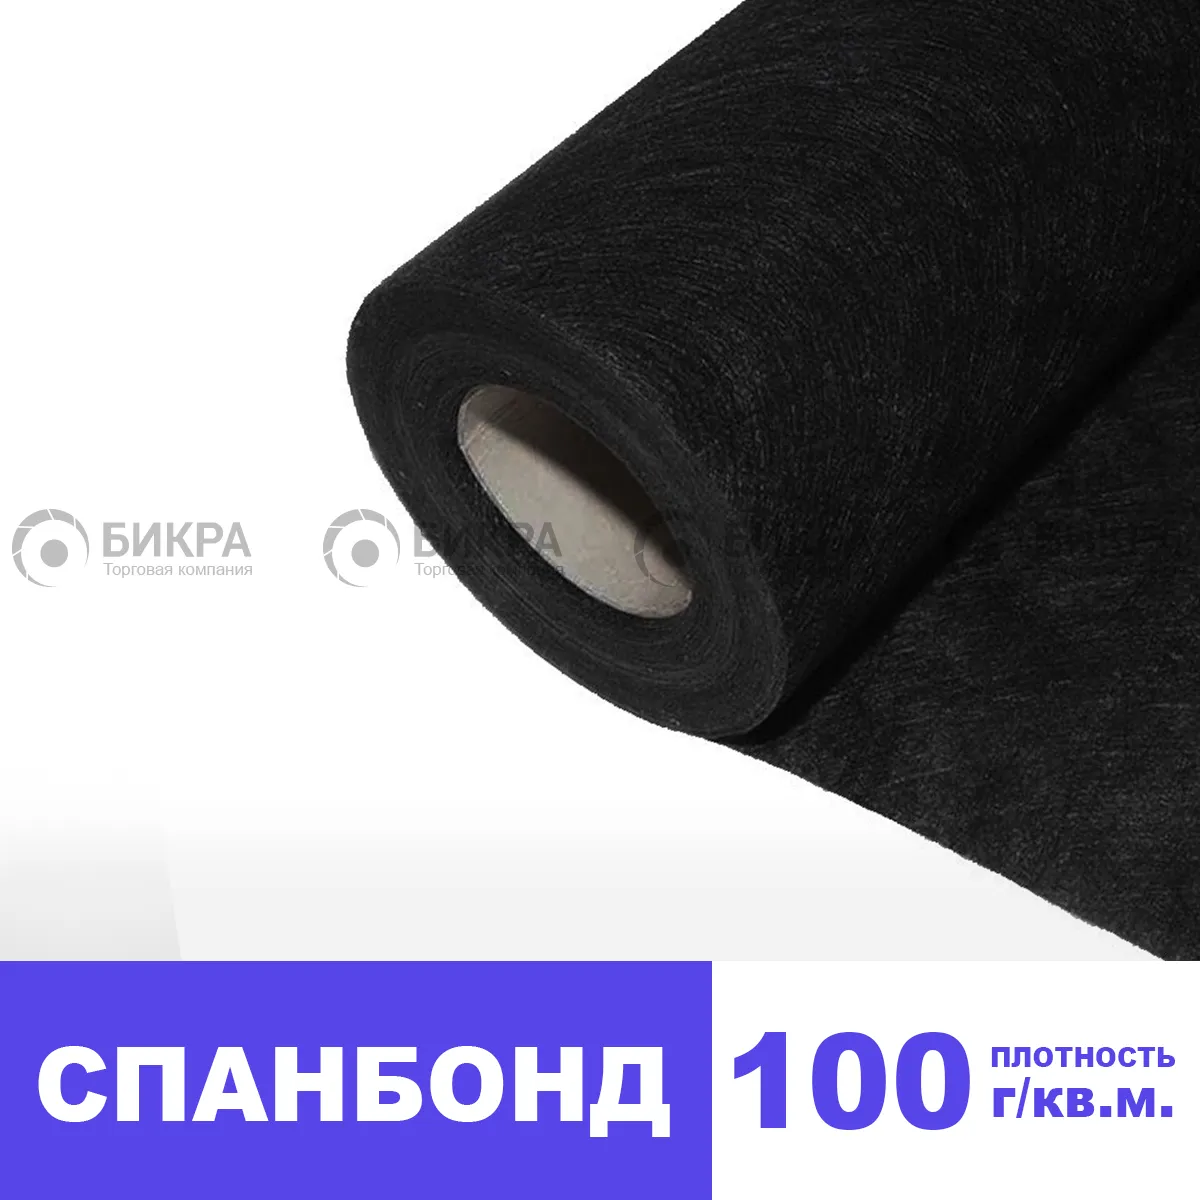  100 г/м2 (черный) | Цена от 35 руб./м2 | Купить 